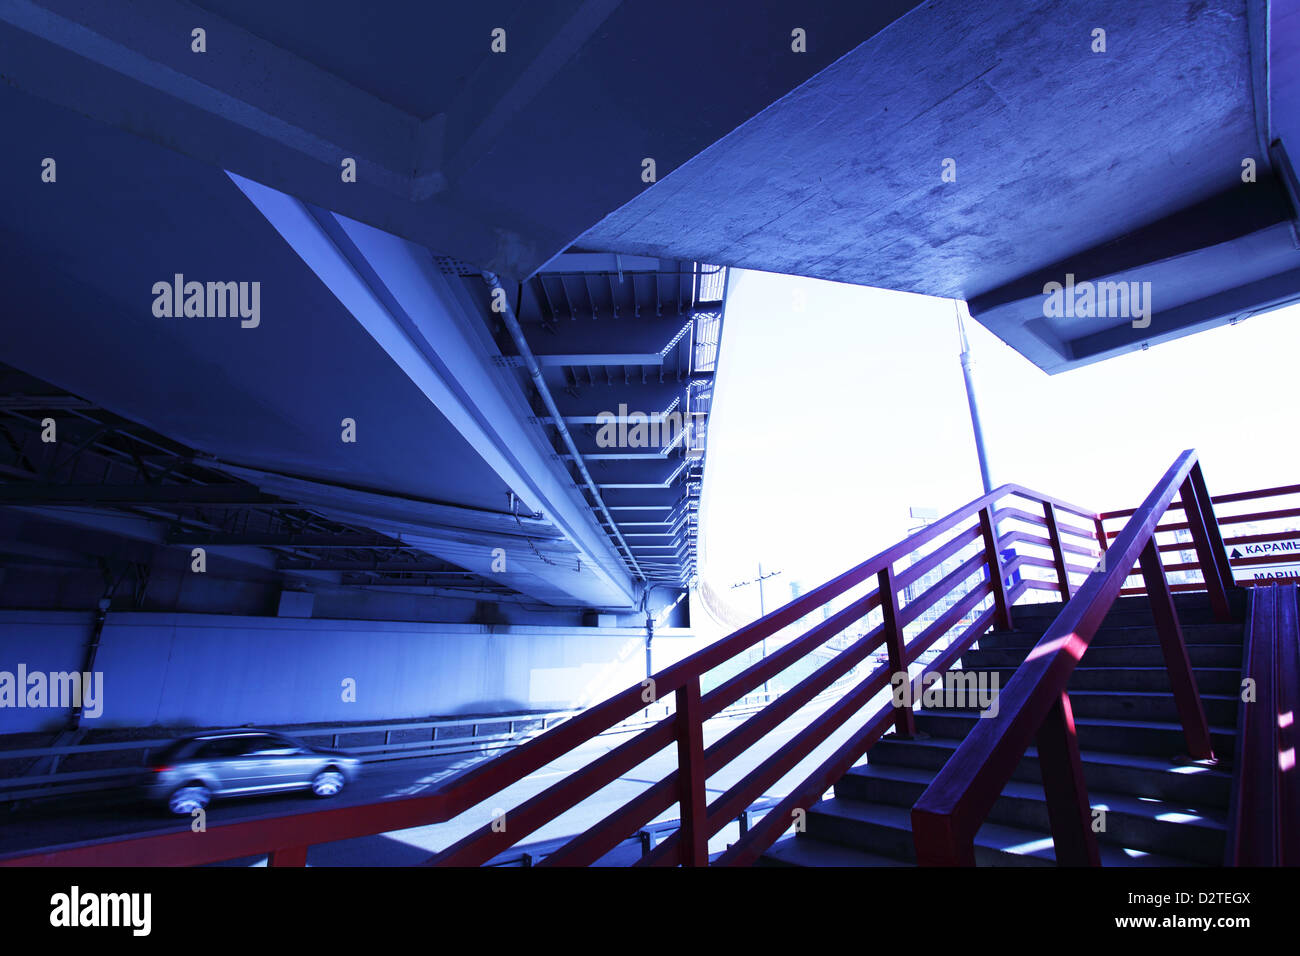 Weitwinkeleinstellung Treppen zur Brücke in blauer Farbe getönt Stockfoto